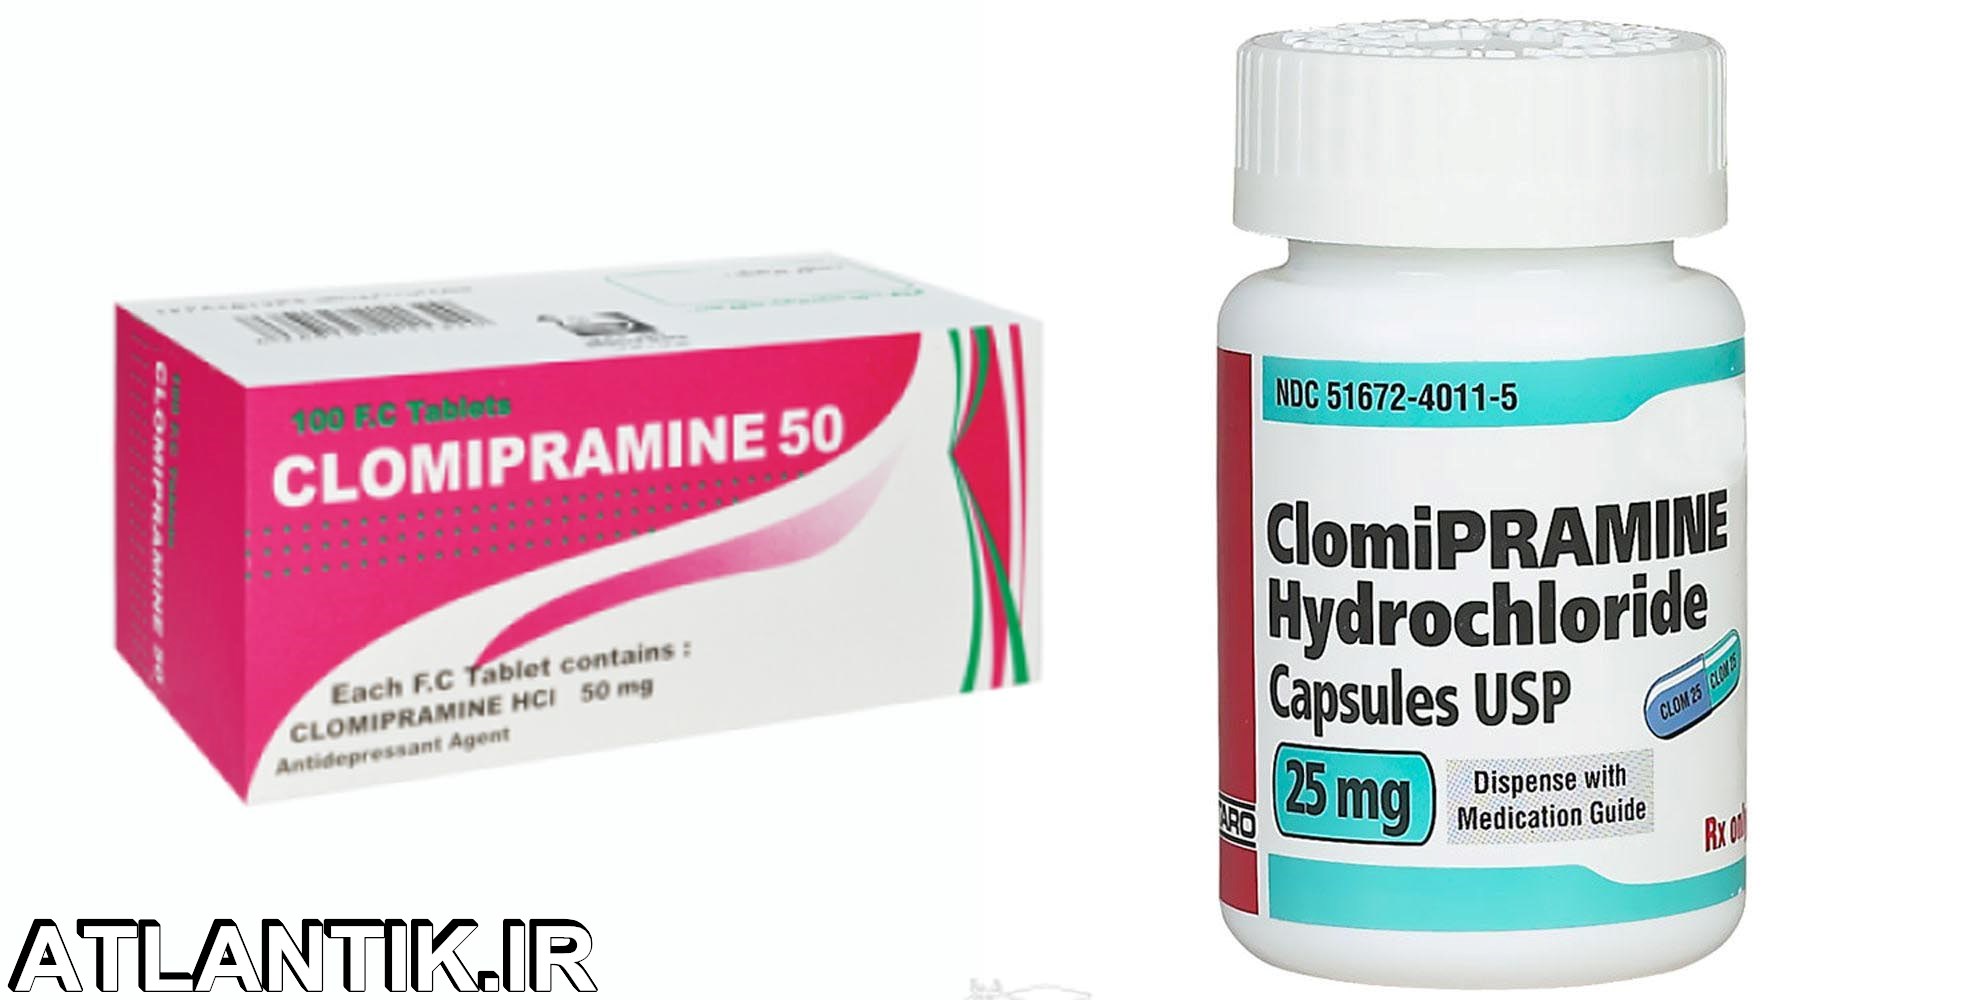 داروشناسي آتلانتيک -معرفي داروي ضد افسردگی کلو میپرامین – Clomipramine